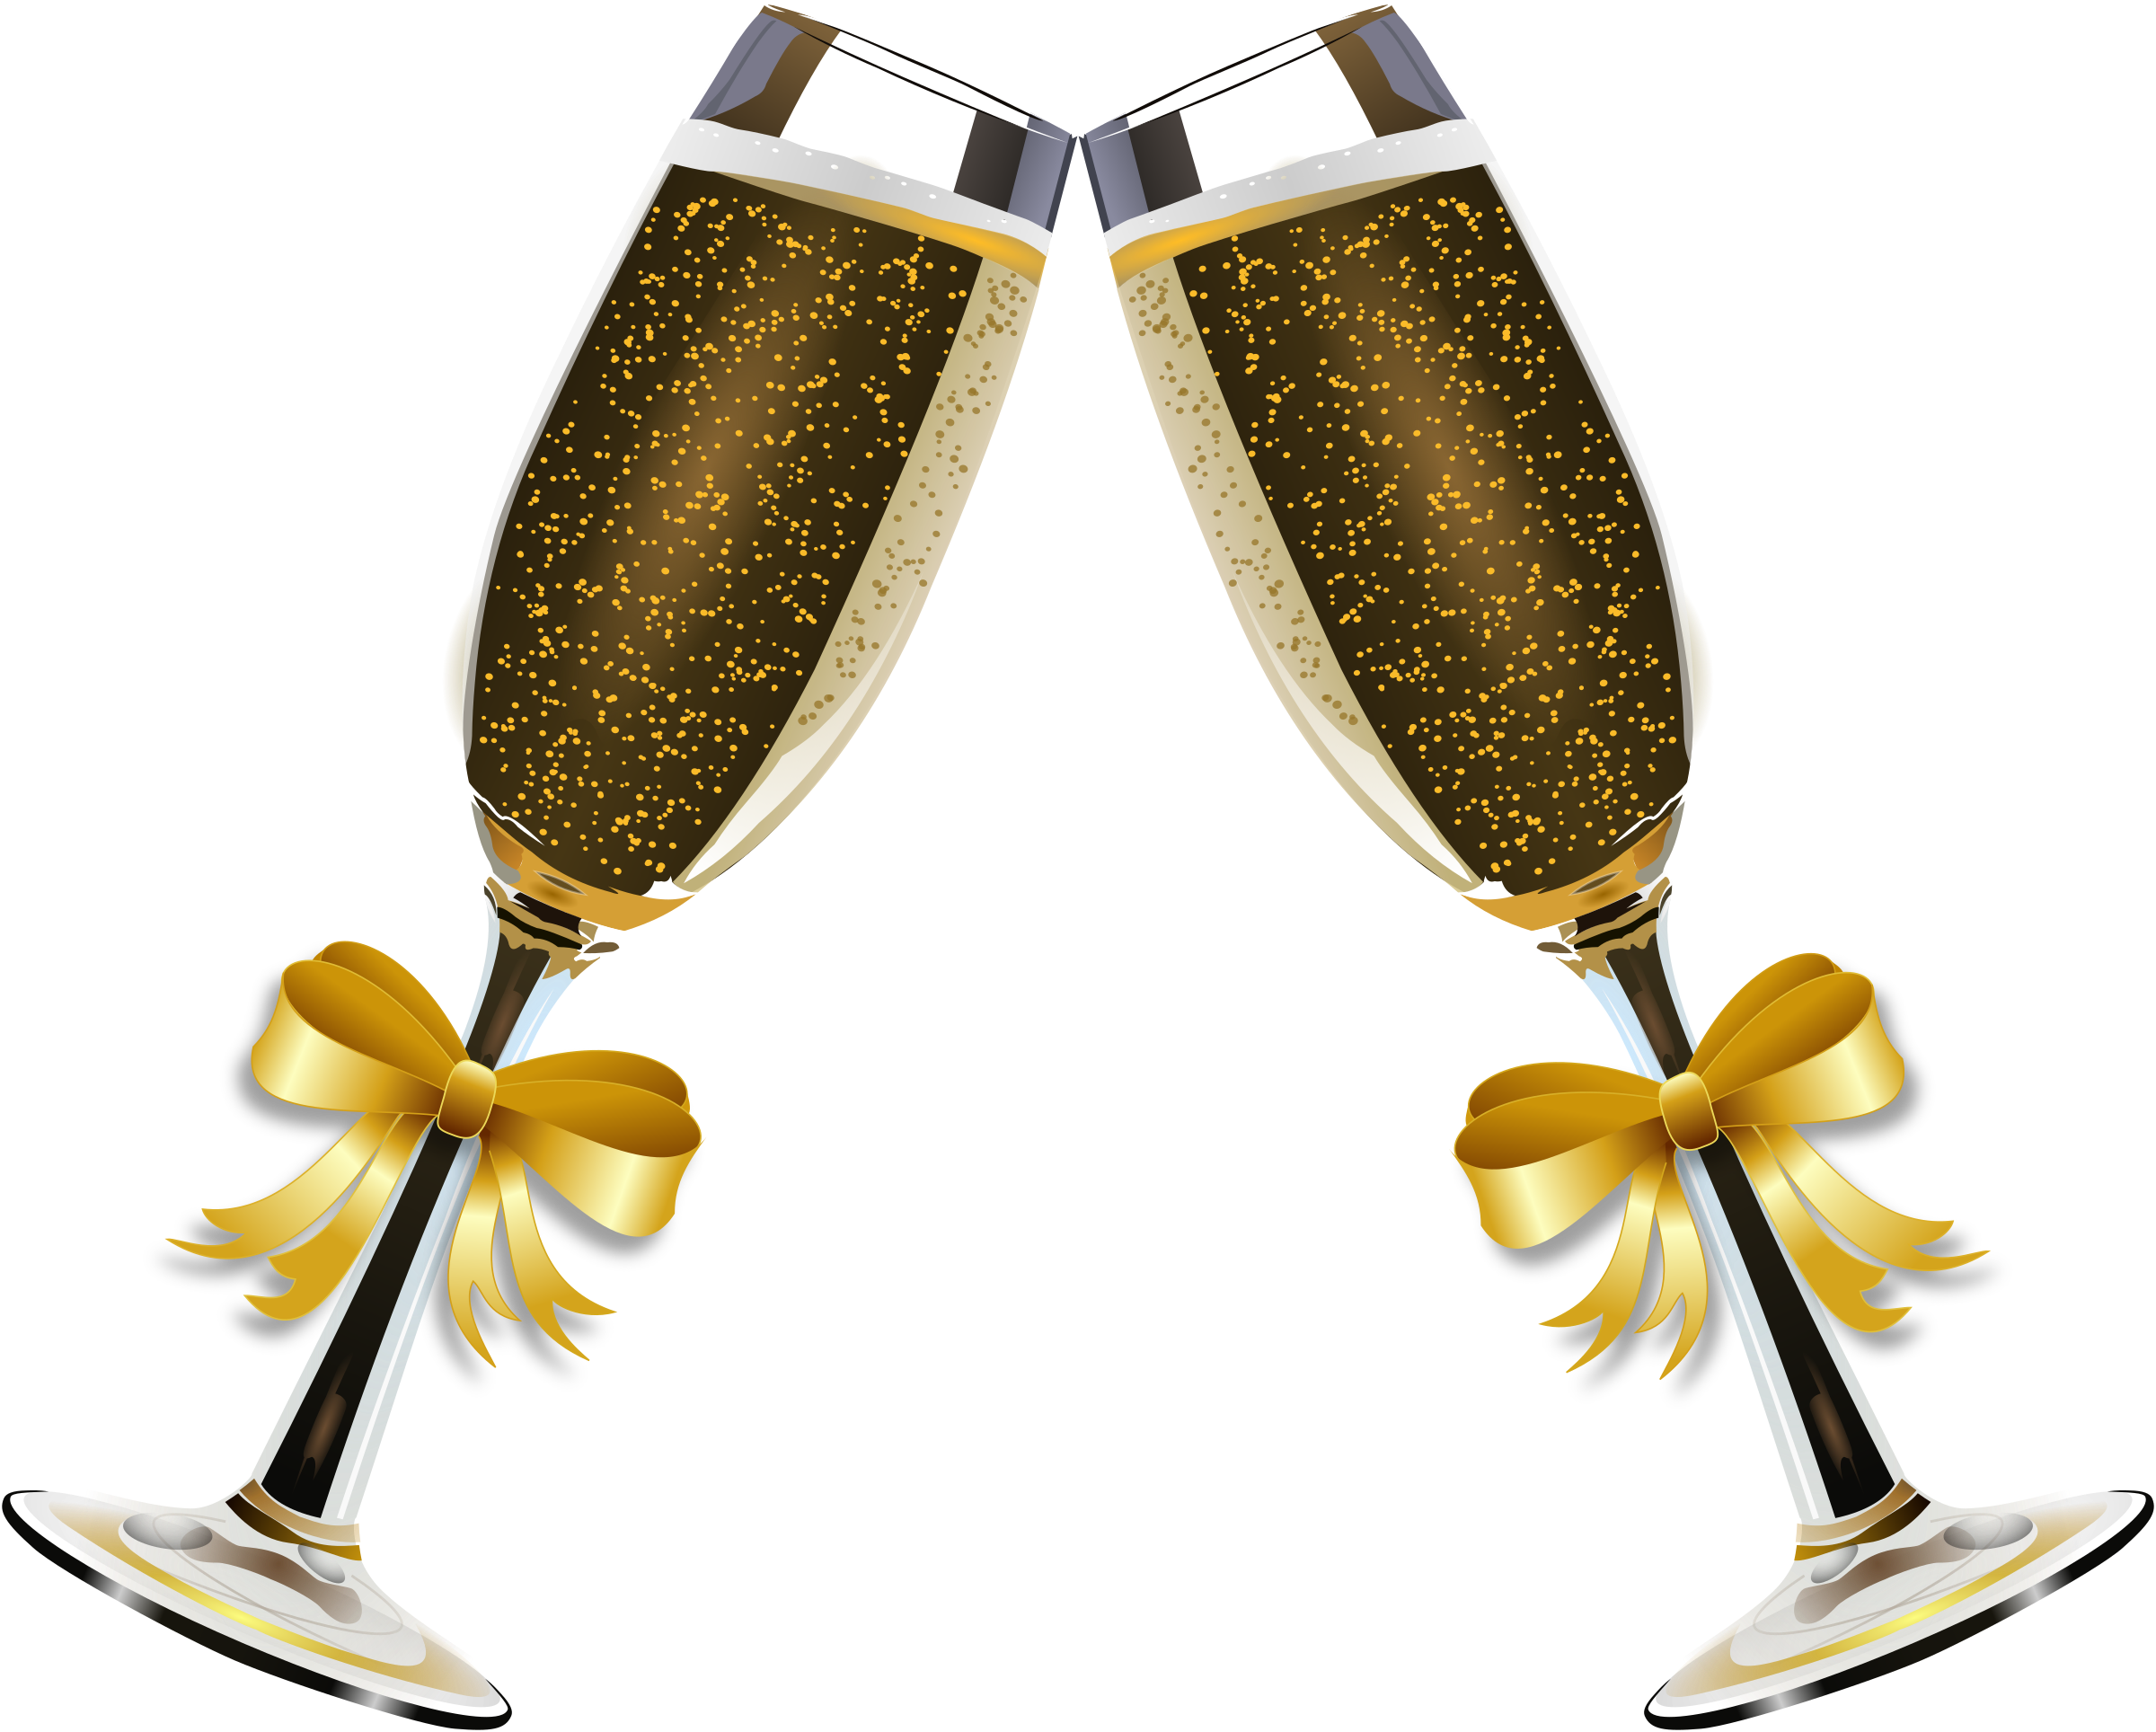 Champagne glass clipart illus